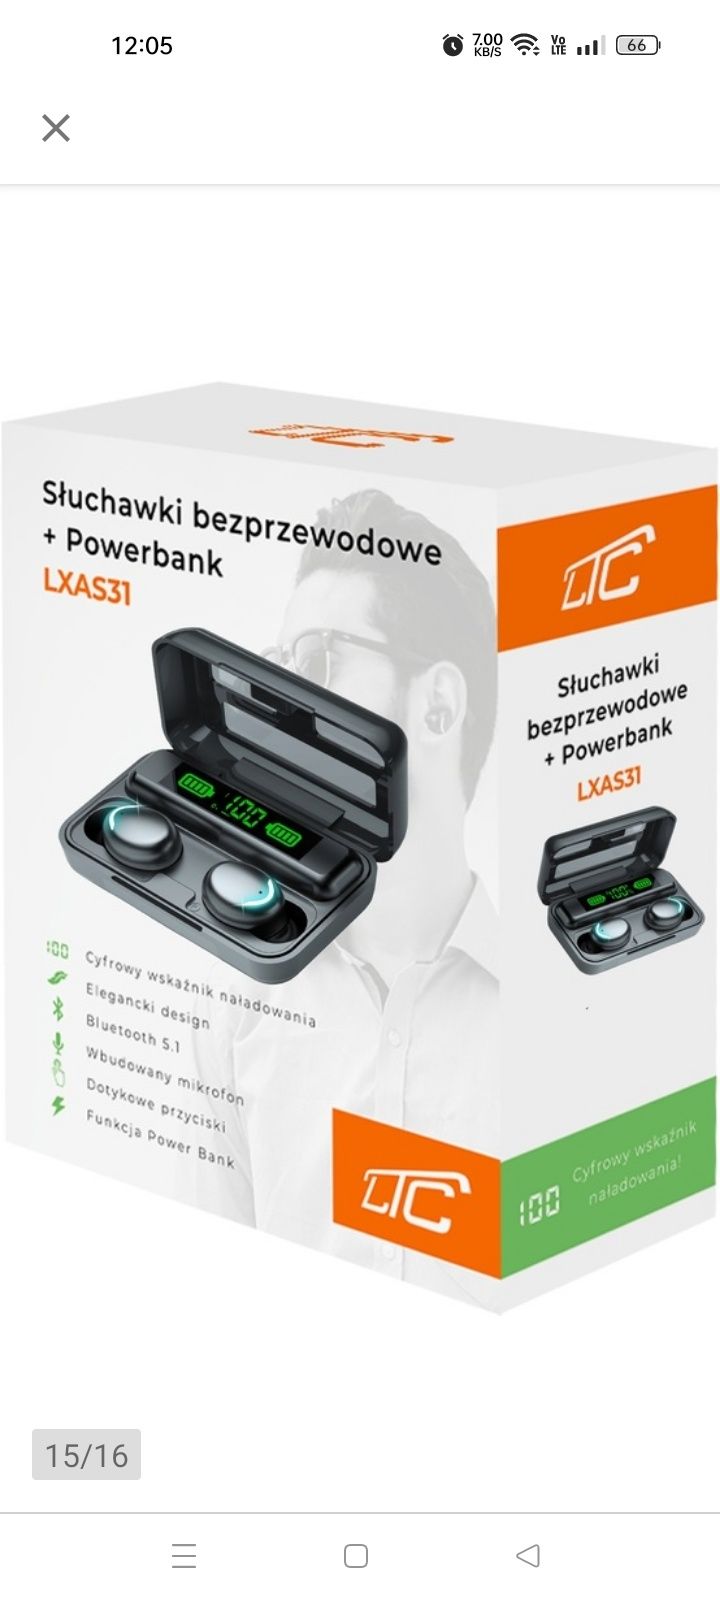 Słuchawki bezprzewodowe LXAS31+ powerbank